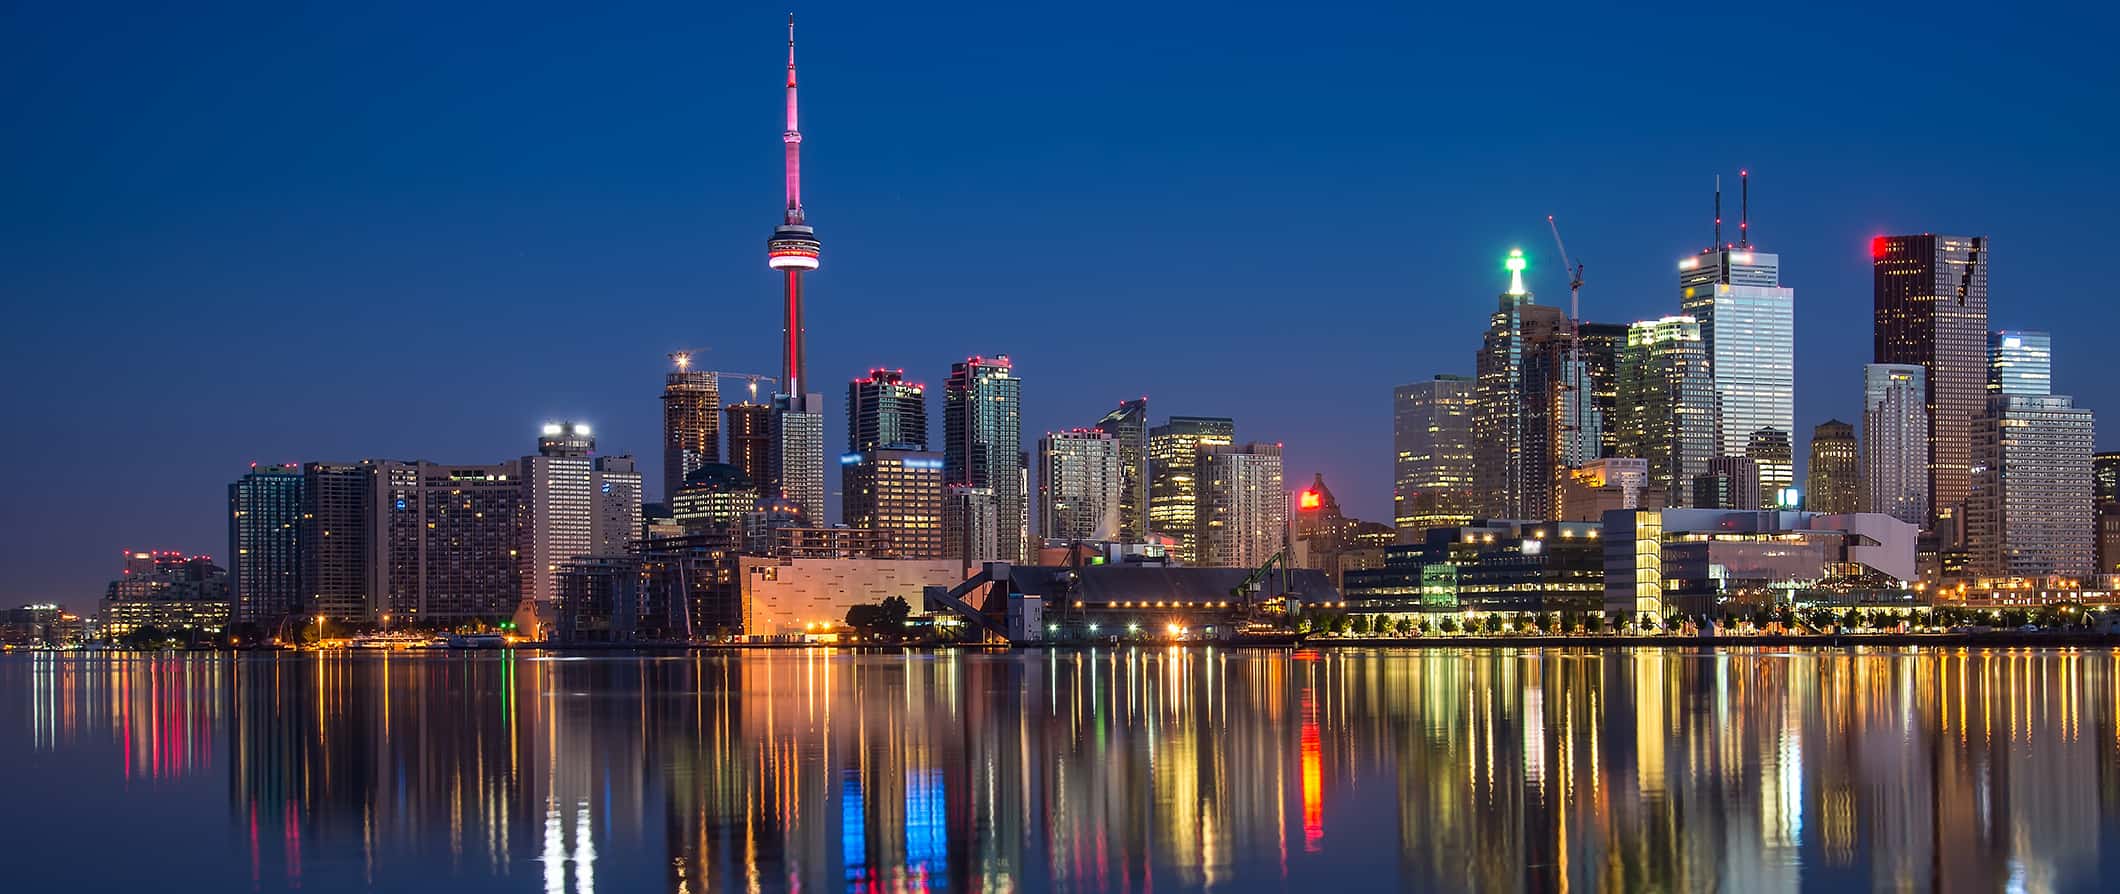 O horizonte noturno de Toronto, Canadá, refletido nas águas calmas do Lago Ontário.